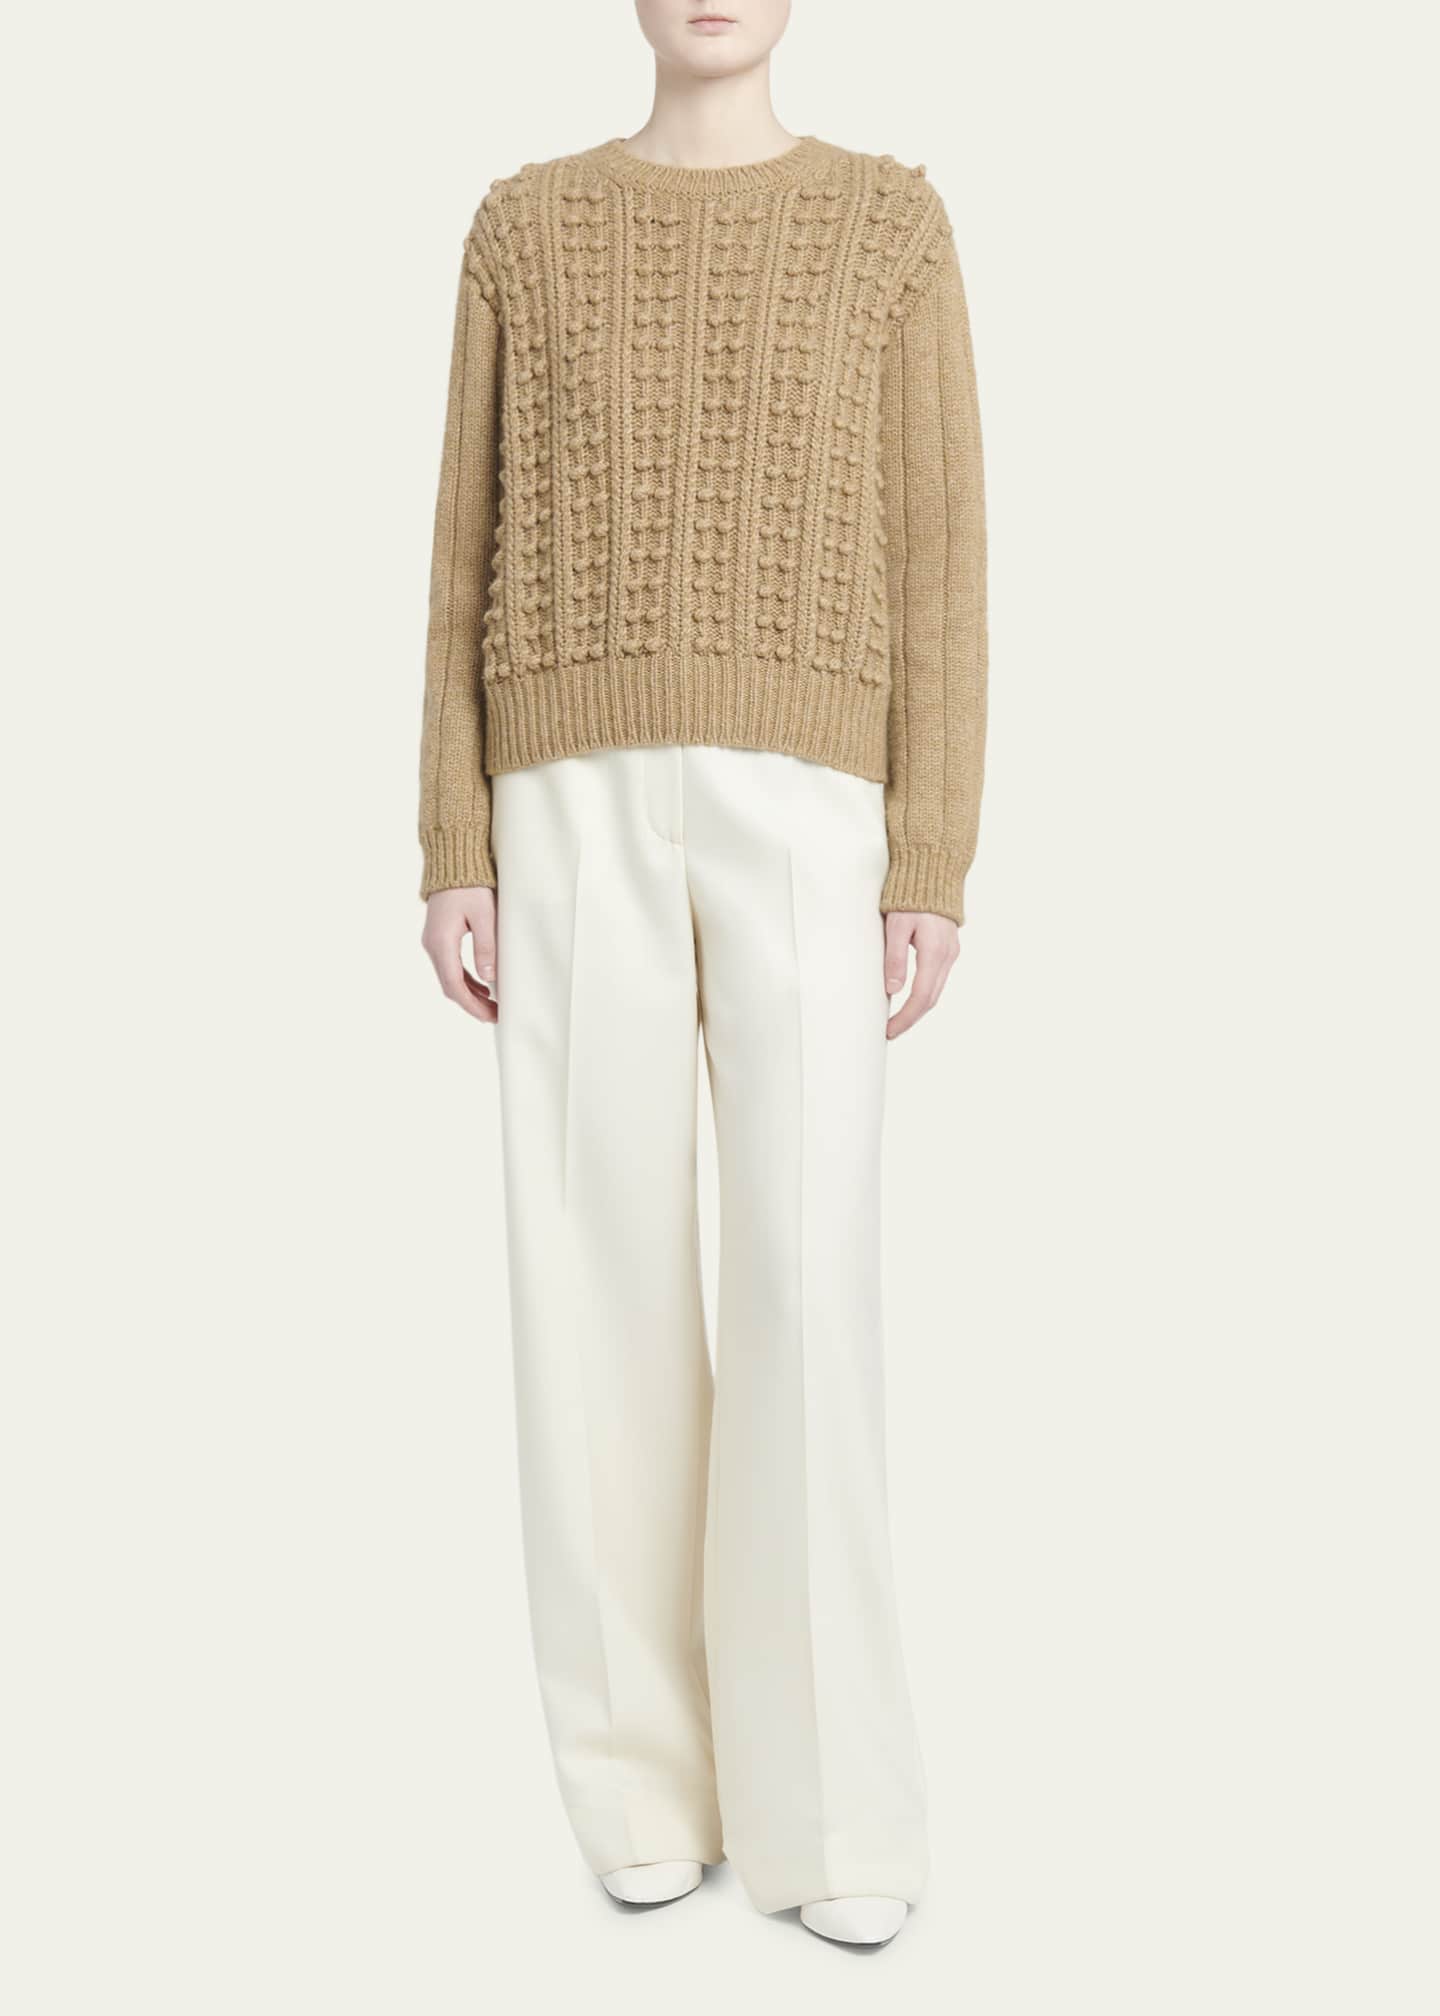 Loro Piana Erdenet Cashmere-Blend Ball Knit Sweater - Bergdorf Goodman